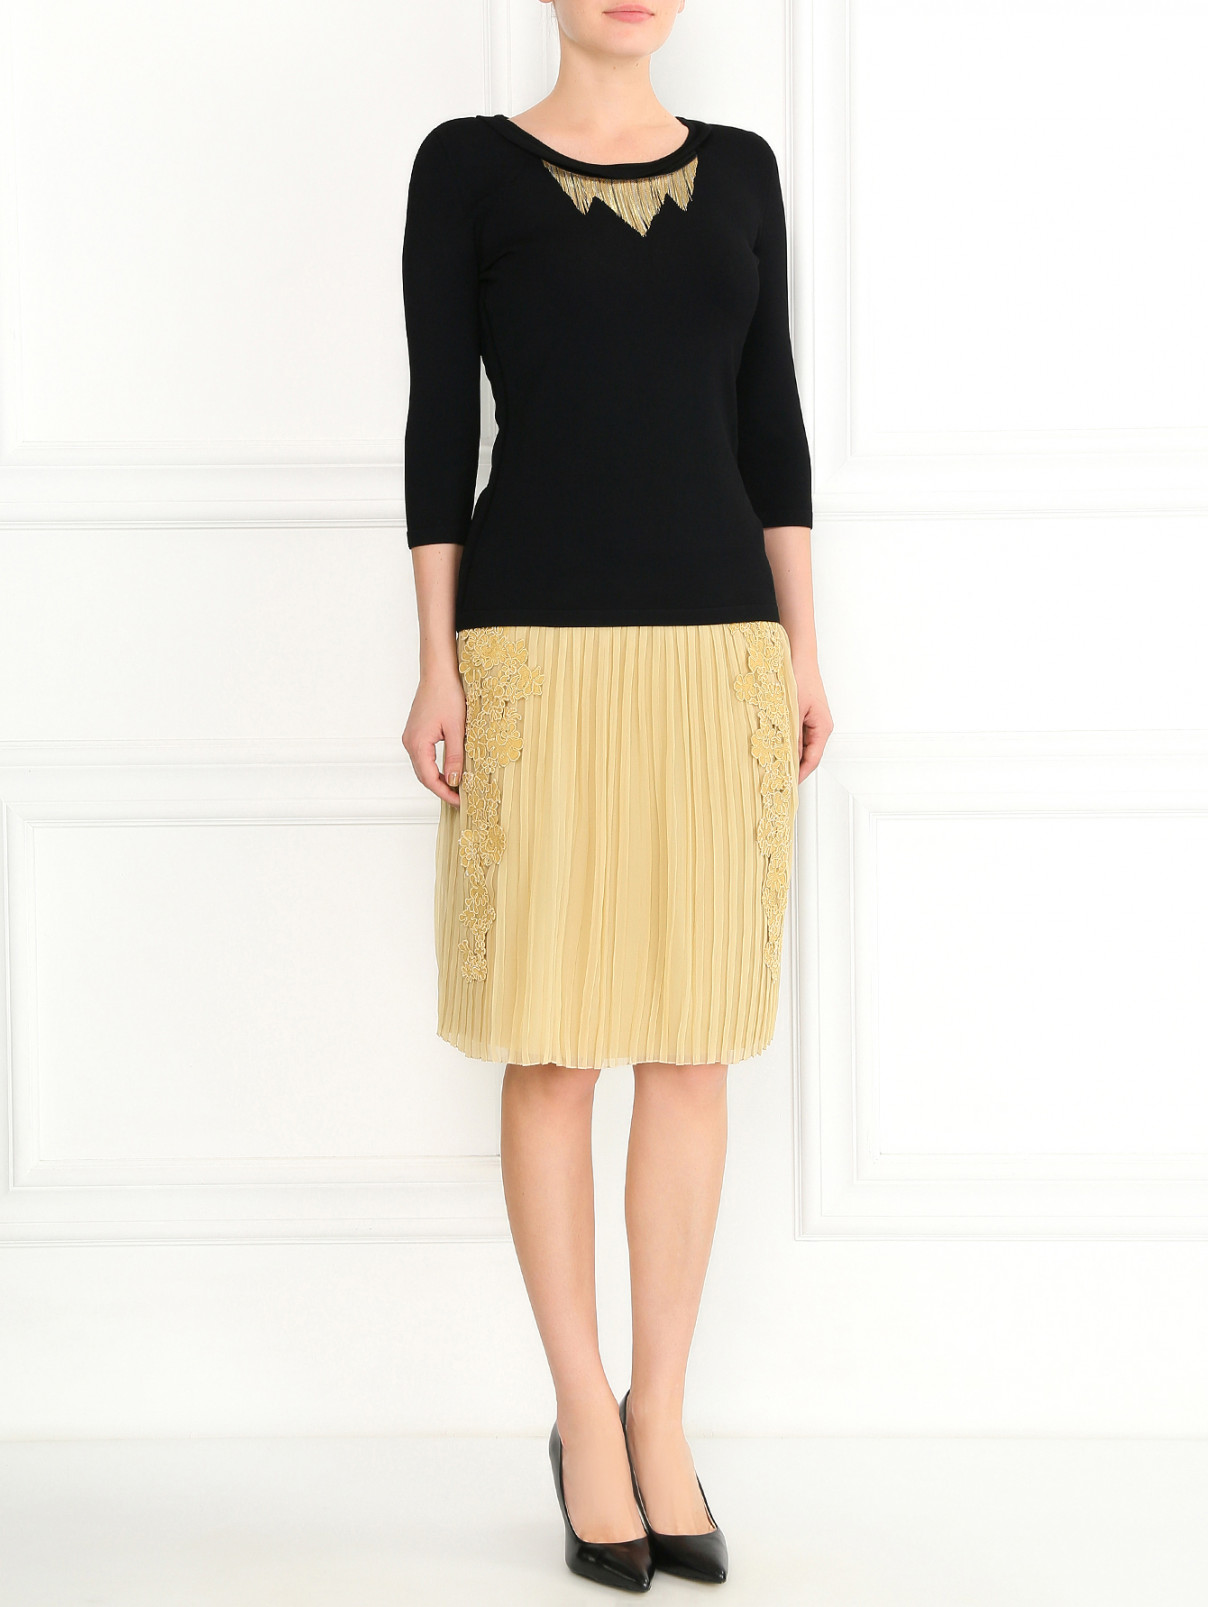 Шелковая юбка-мини с кружевной аппликацией Alberta Ferretti  –  Модель Общий вид  – Цвет:  Бежевый